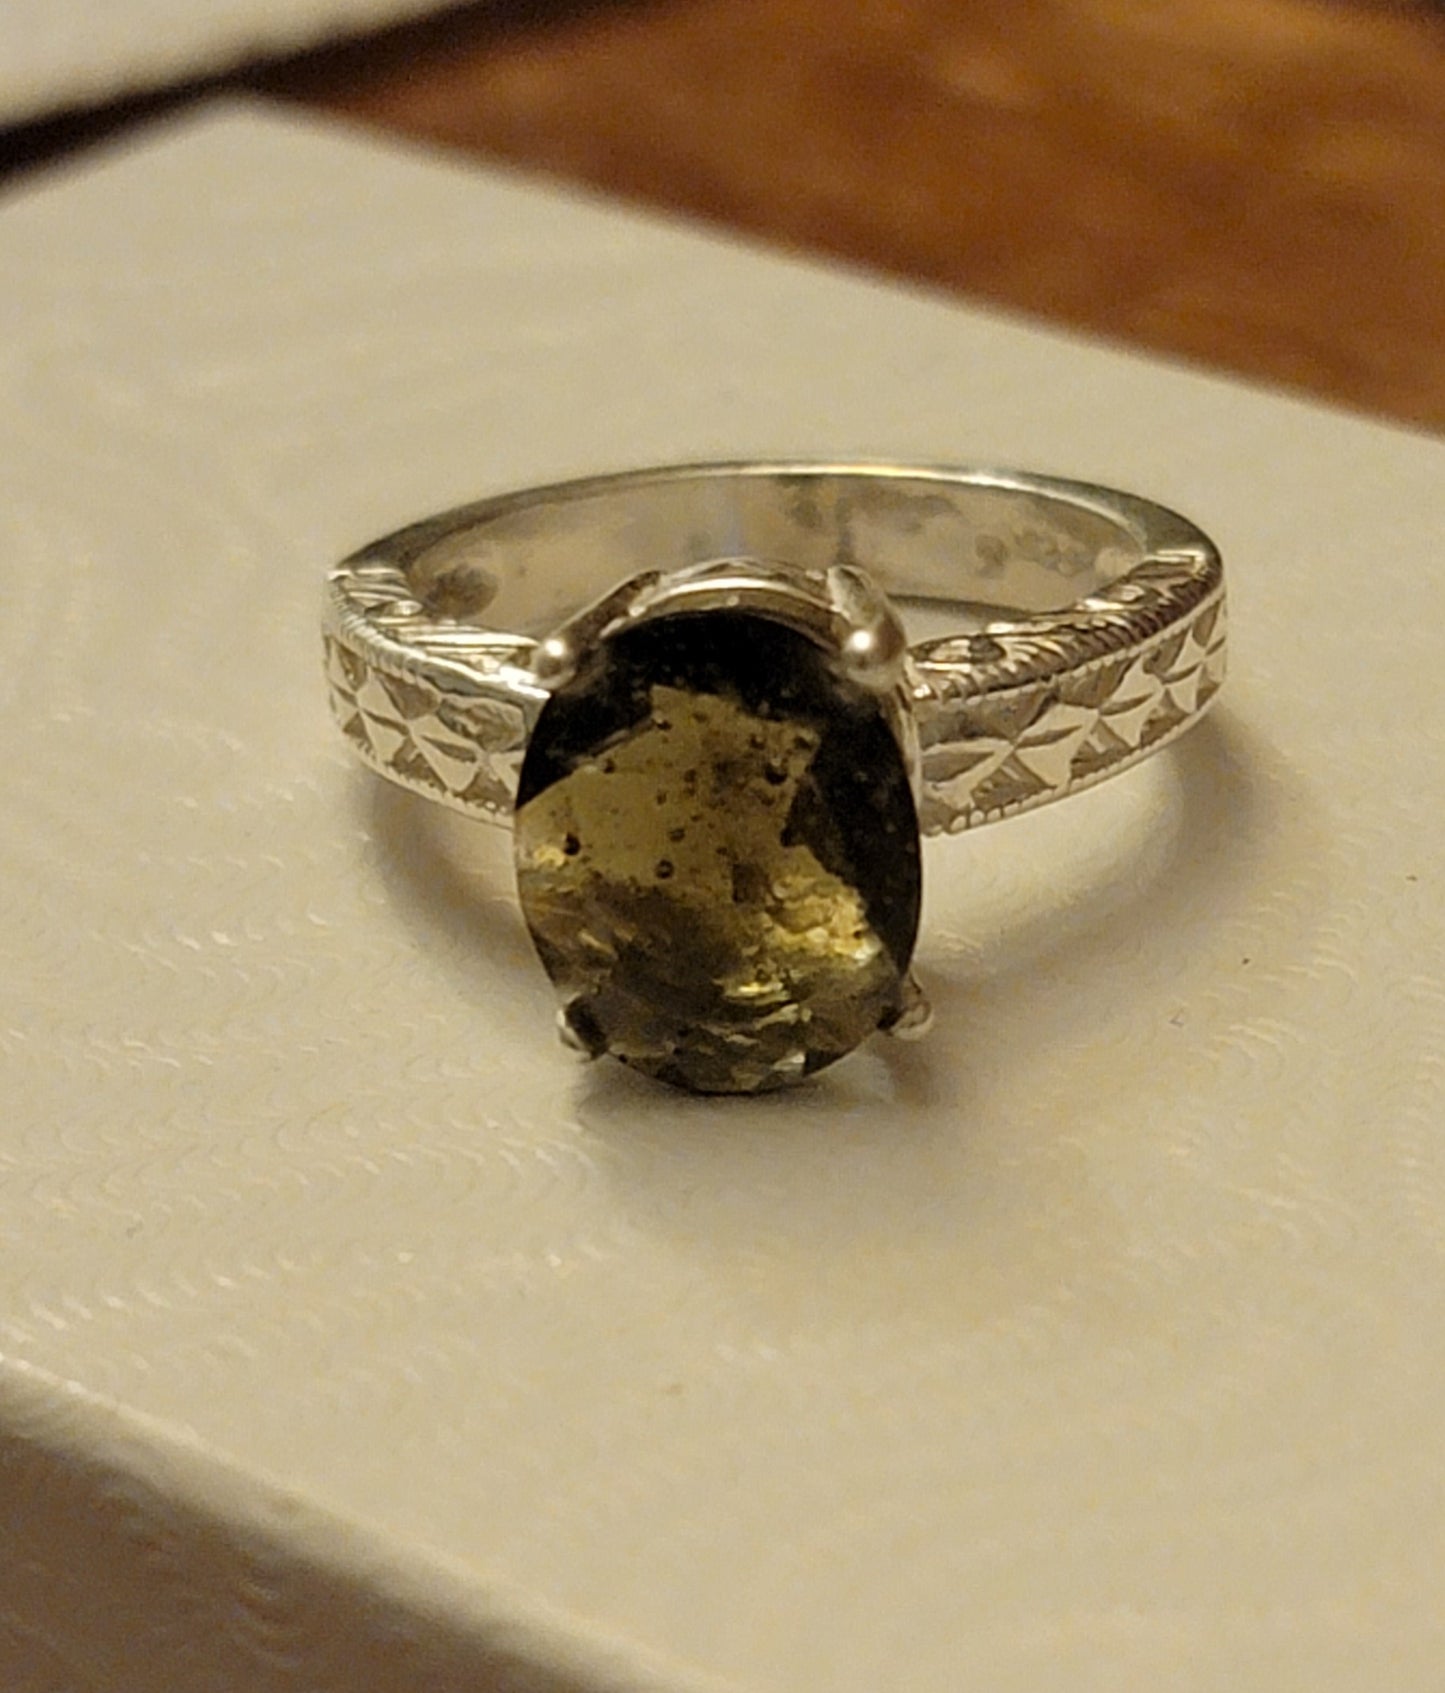 Moldavite ring